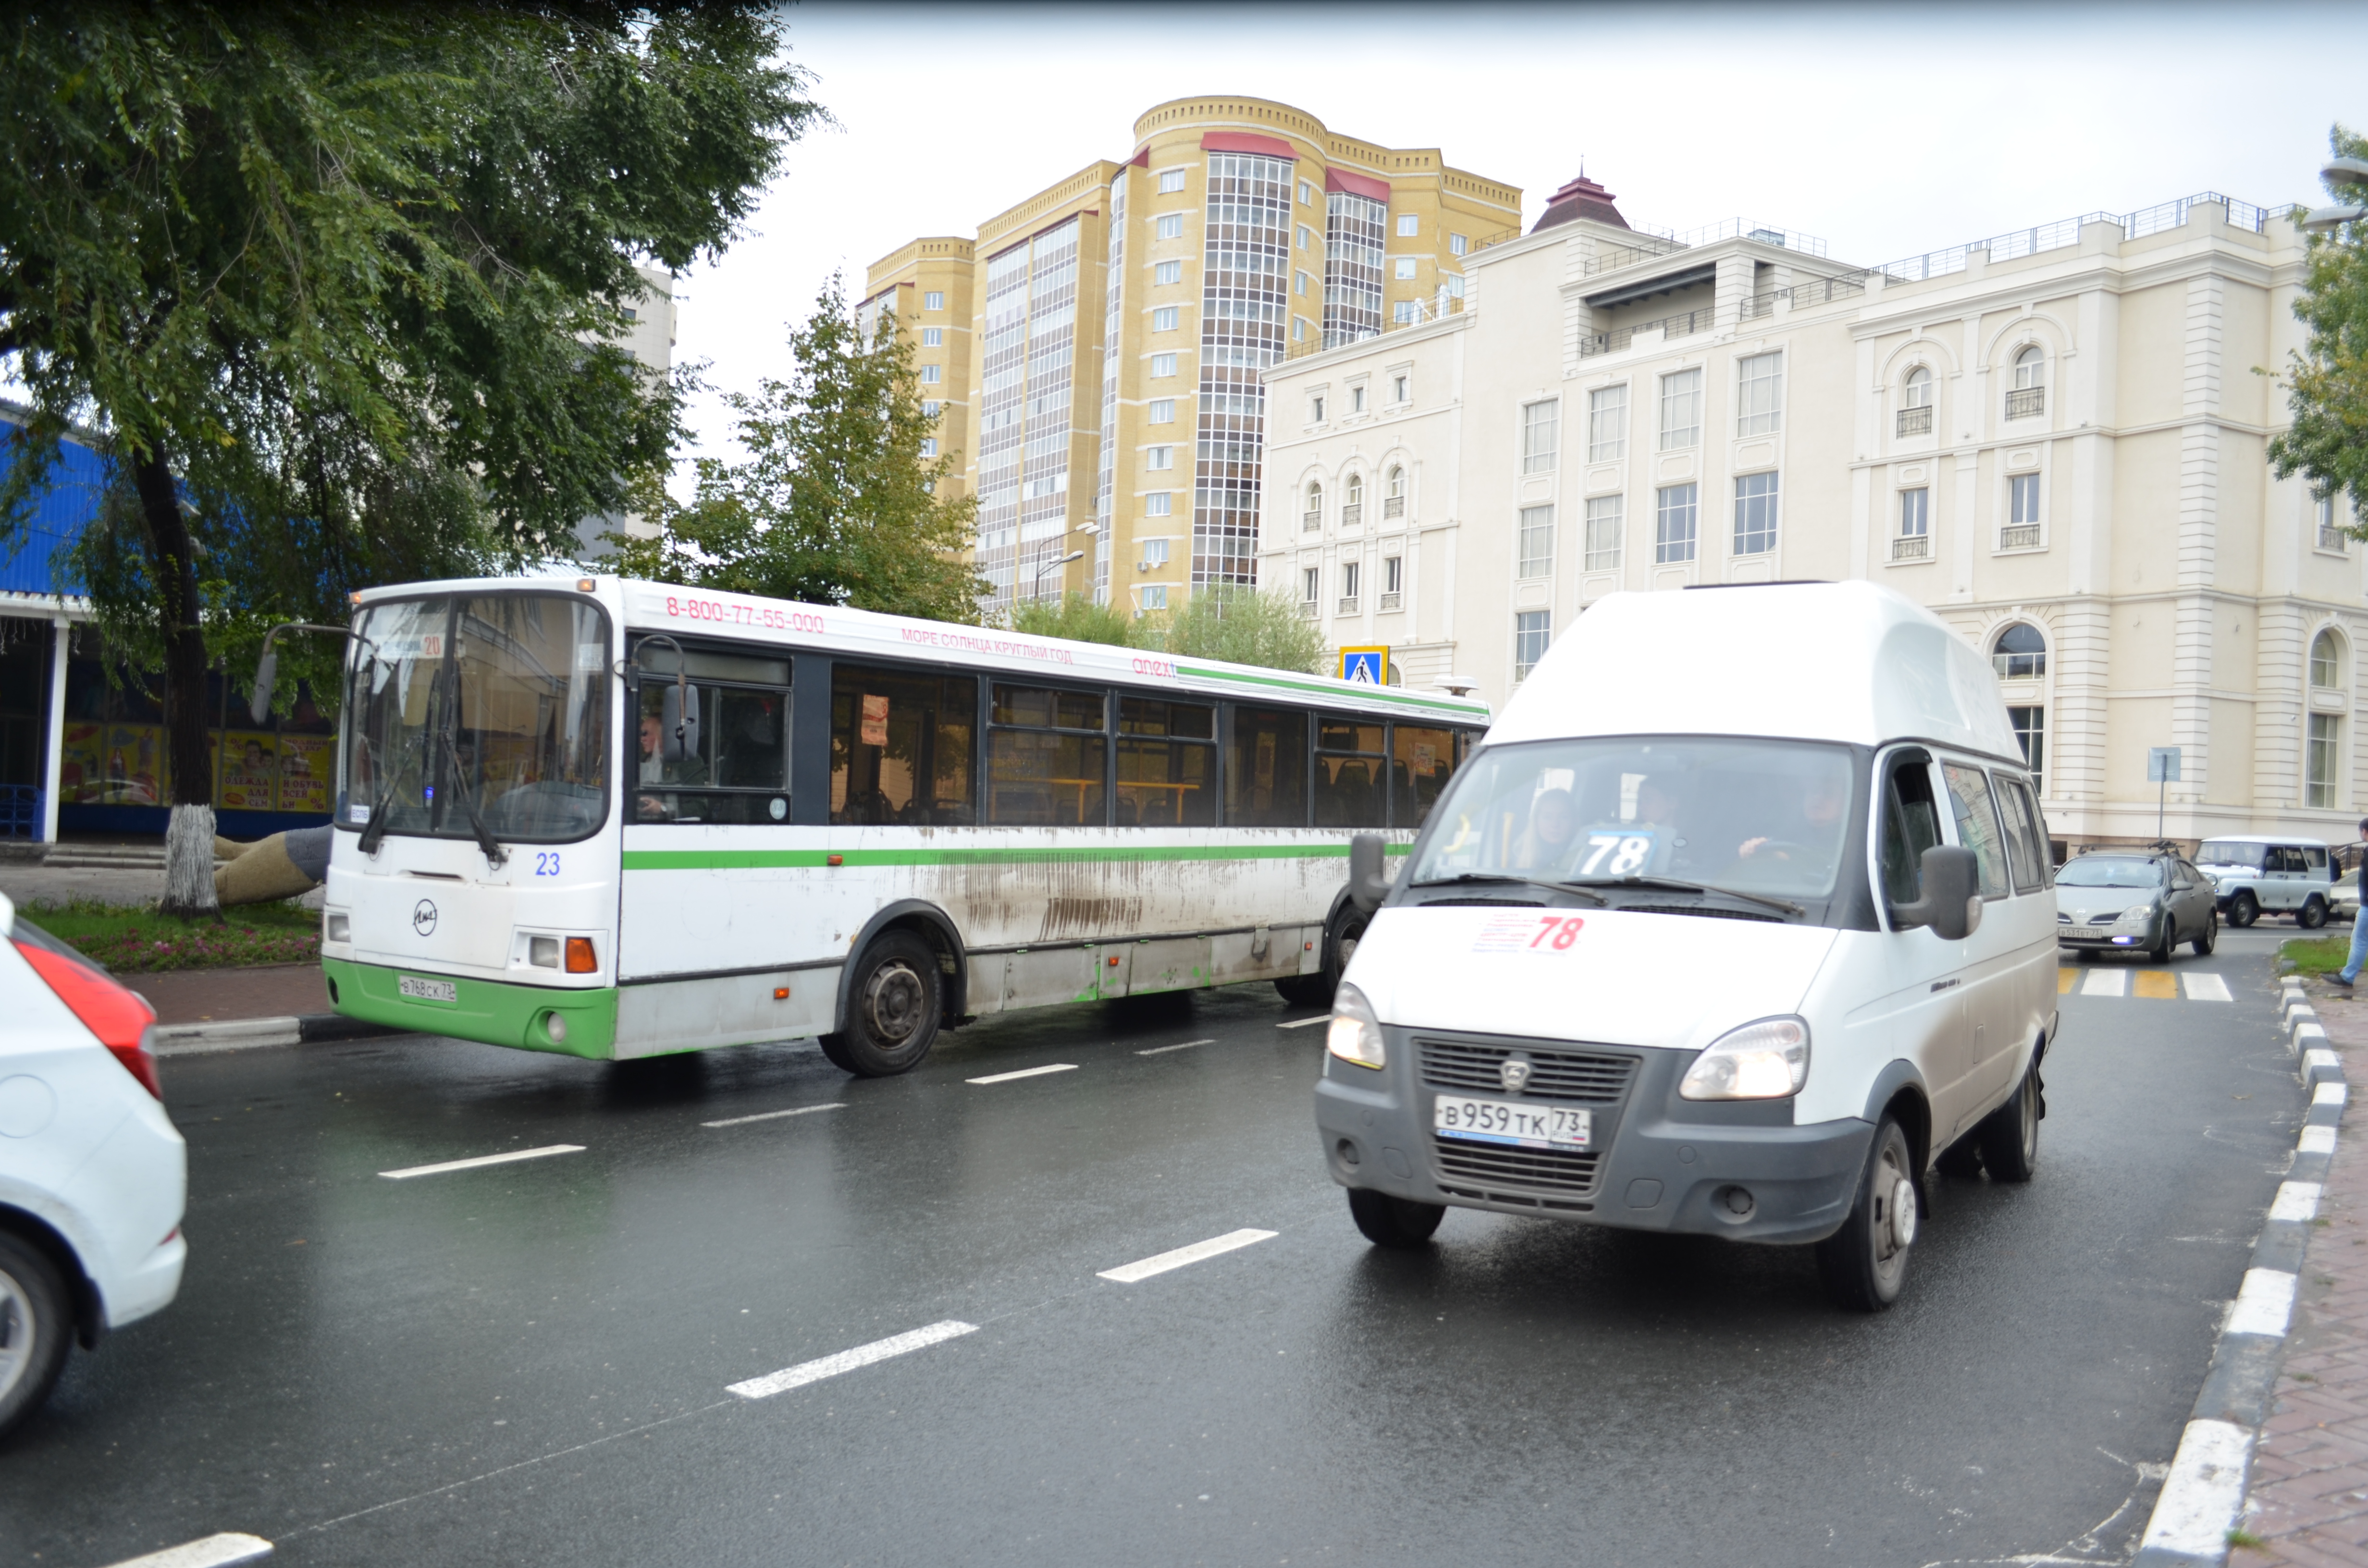 Глава Ульяновска Александр Болдакин поручил усилить проверки городского общественного транспорта.